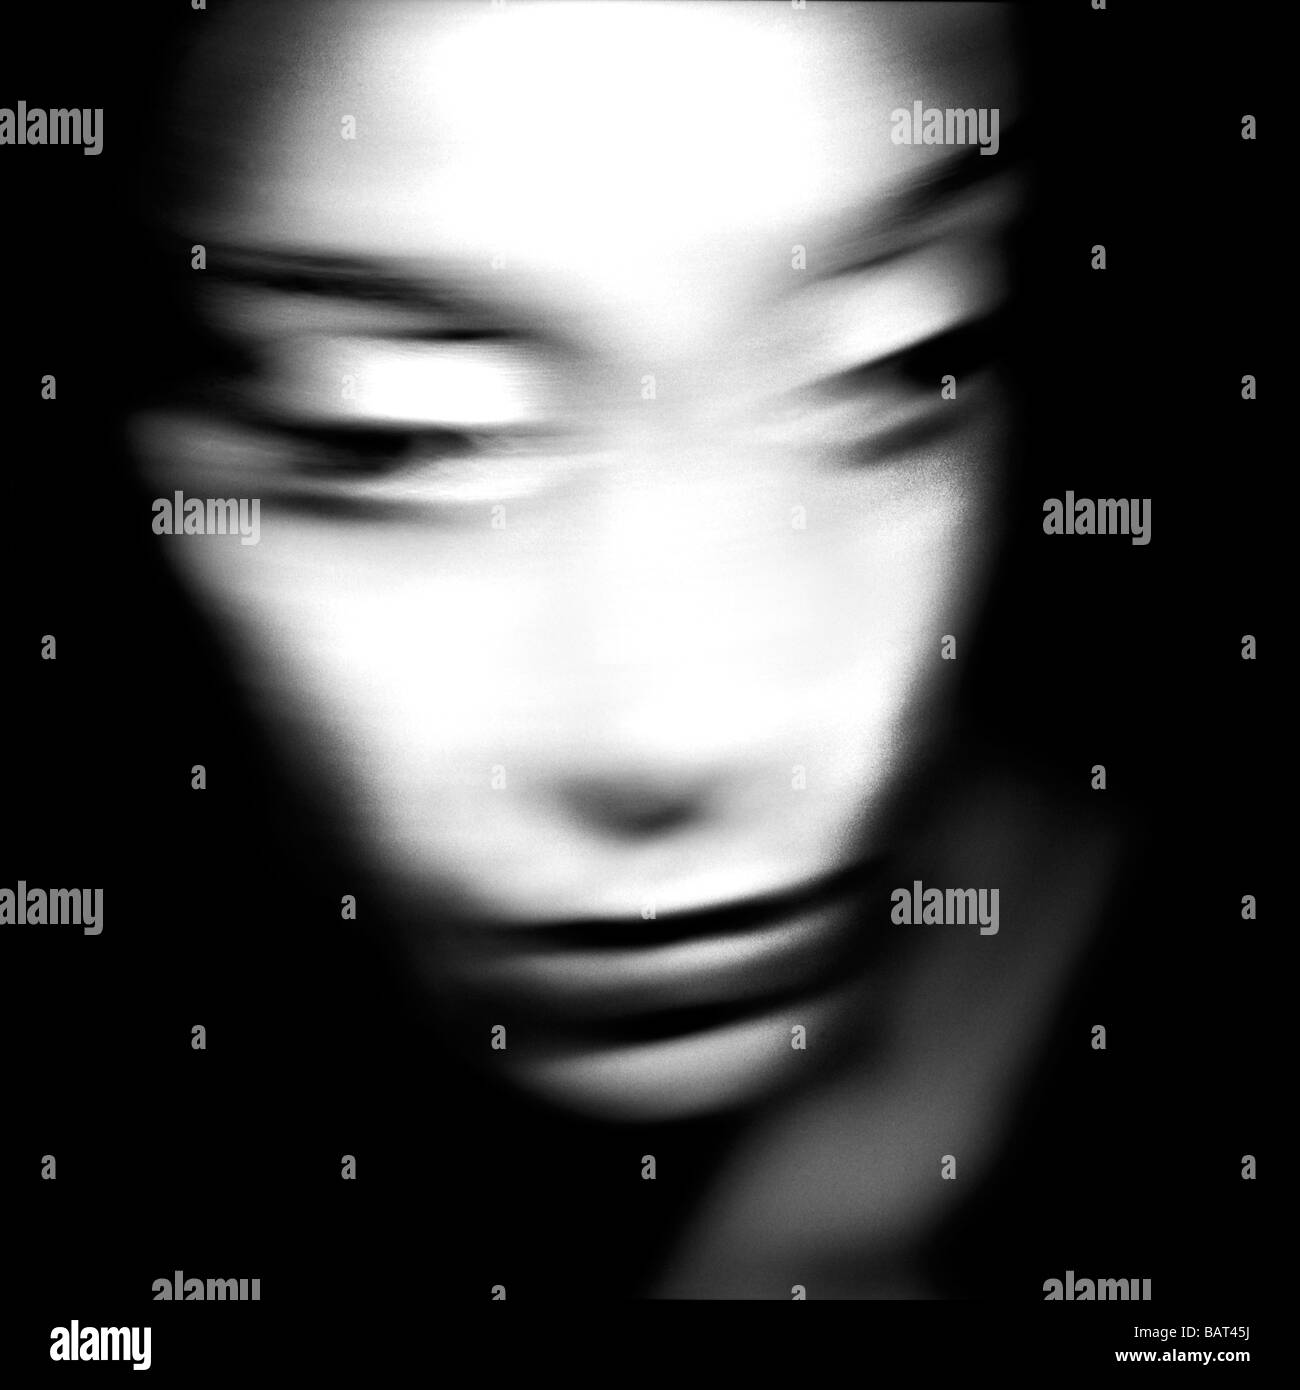 schwarz / weiß abstrakt Nahaufnahme von einem Mädchen Gesicht Schuss mit einer langen Verschlusszeit so die Funktionen verschwimmen Stockfoto